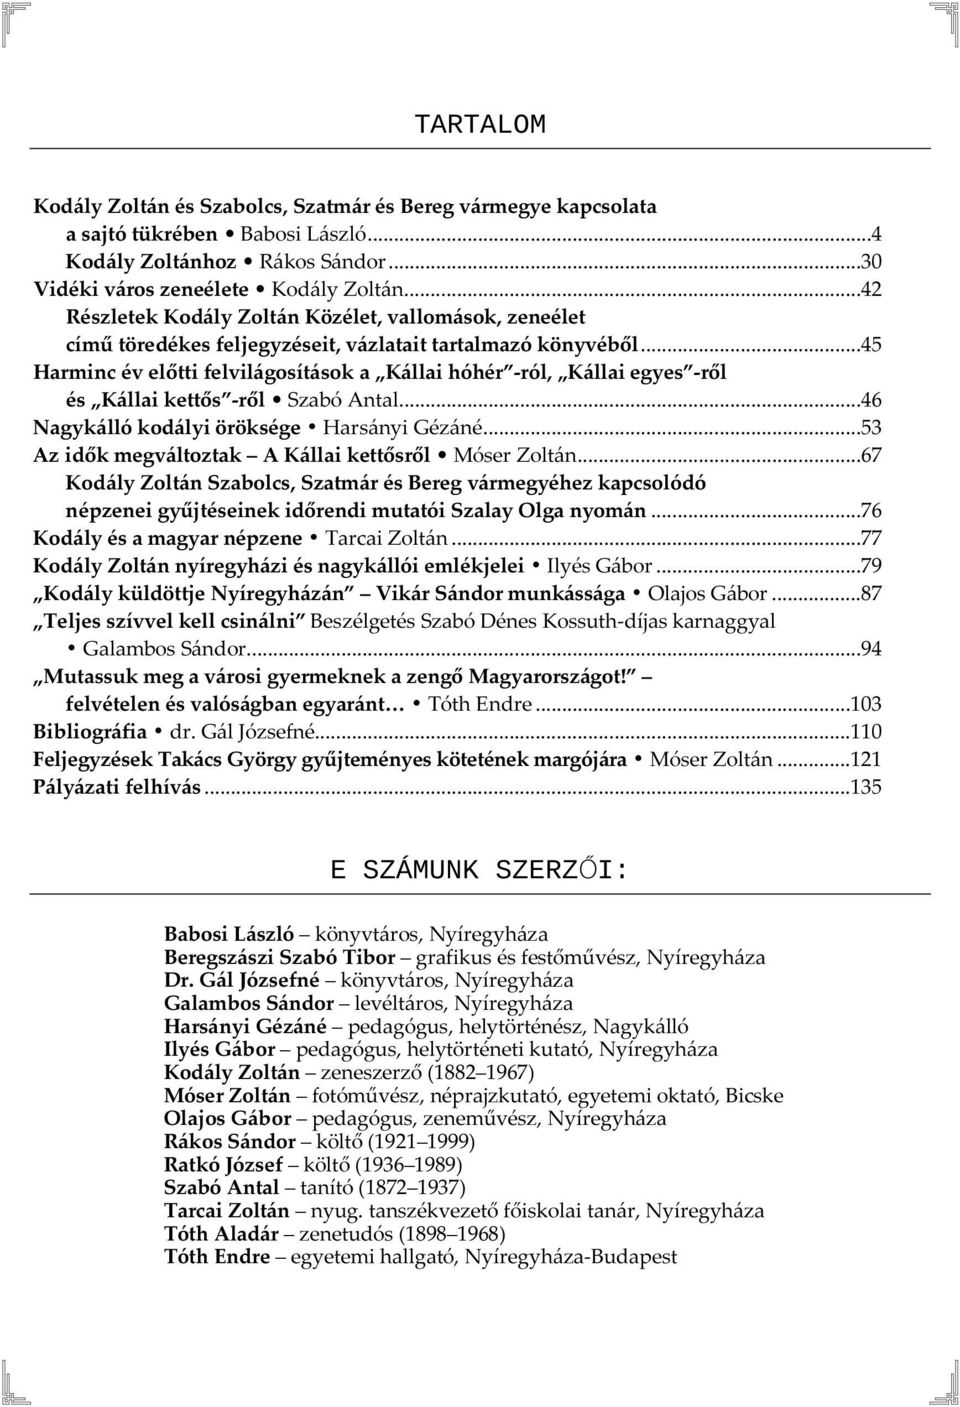 ..45 Harminc év előtti felvilágosítások a Kállai hóhér -ról, Kállai egyes -ről és Kállai kettős -ről Szabó Antal...46 Nagykálló kodályi öröksége Harsányi Gézáné.